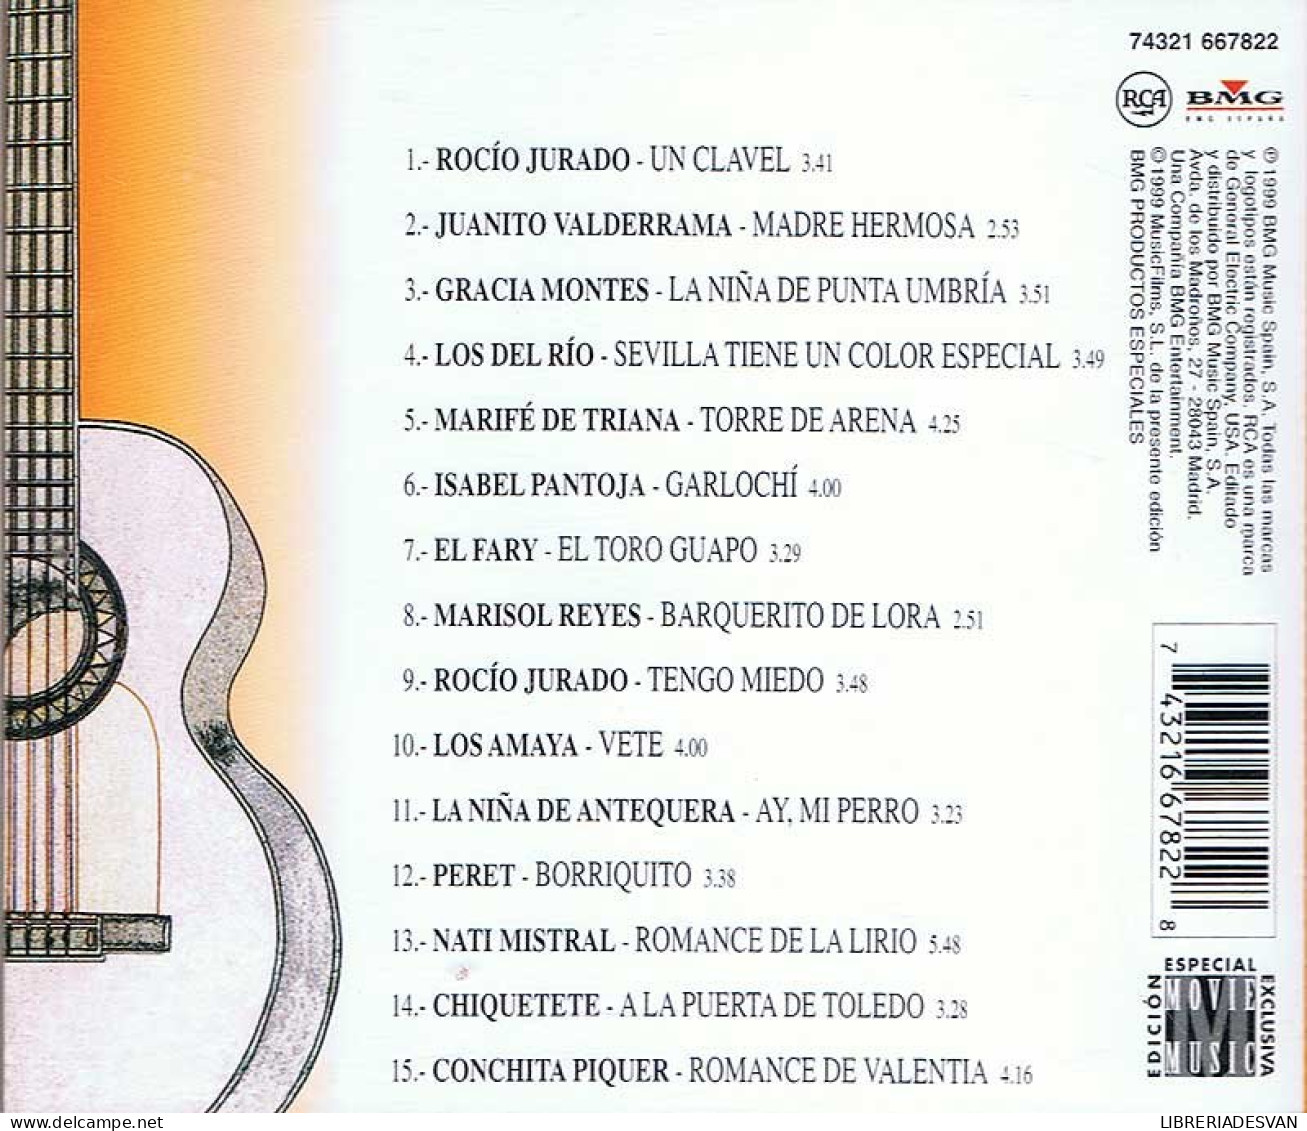 Arte Y Sentimiento 2. Rocío Jurado. Juanito Valderrama... CD - Andere - Spaans